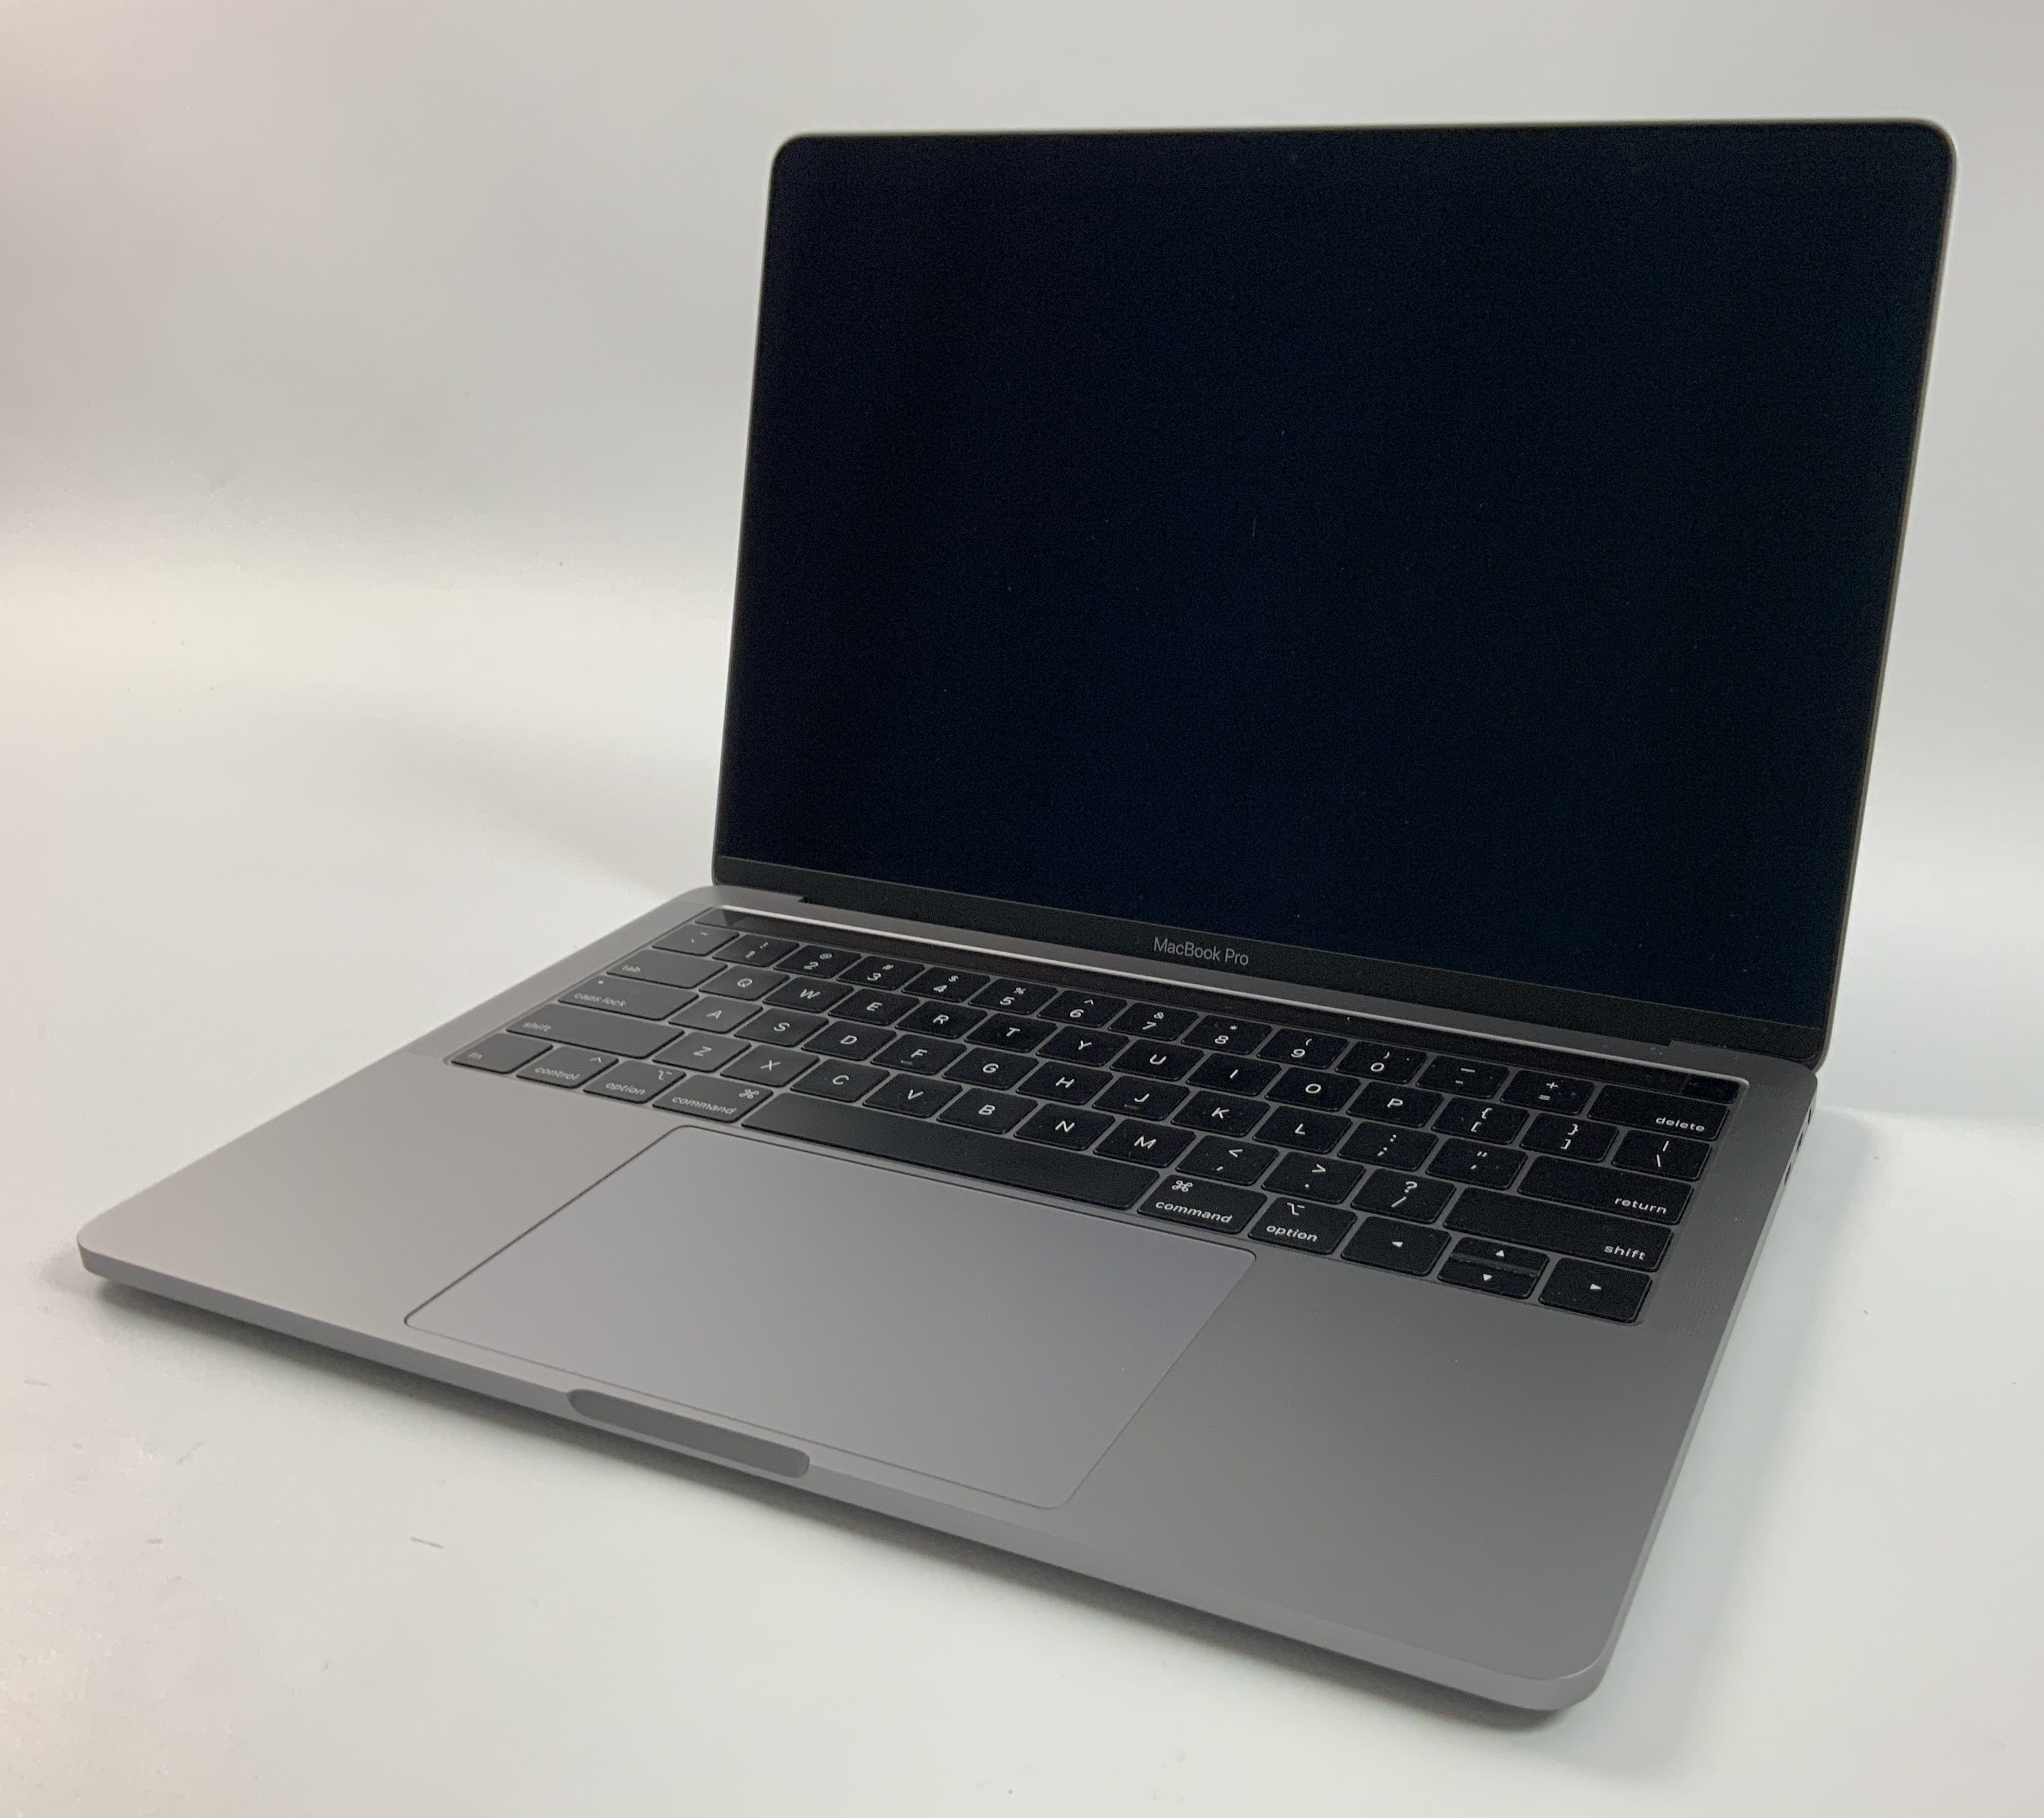 MacBook Pro 13" 4TBT Mid 2018 (Intel Quad-Core i7 2.7 GHz 16 GB RAM 1 TB SSD), Space Gray, Intel Quad-Core i7 2.7 GHz, 16 GB RAM, 1 TB SSD, Kuva 1